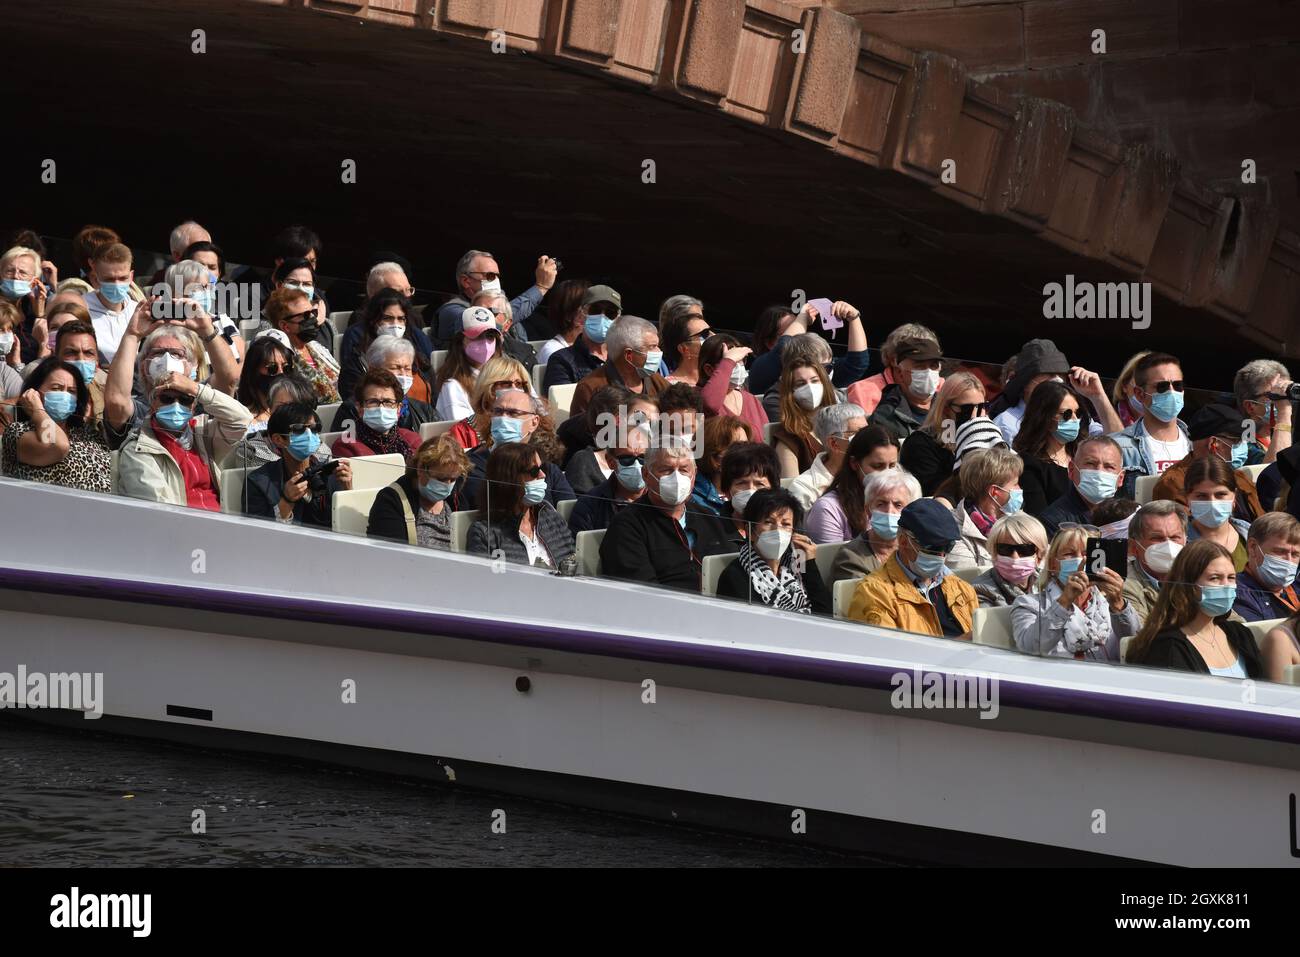 Touristes portant des masques pandémiques Covid sur un bateau à vue Strasbourg France 2021 coronavirus virus tourisme vacances voyage passagers vacances Banque D'Images